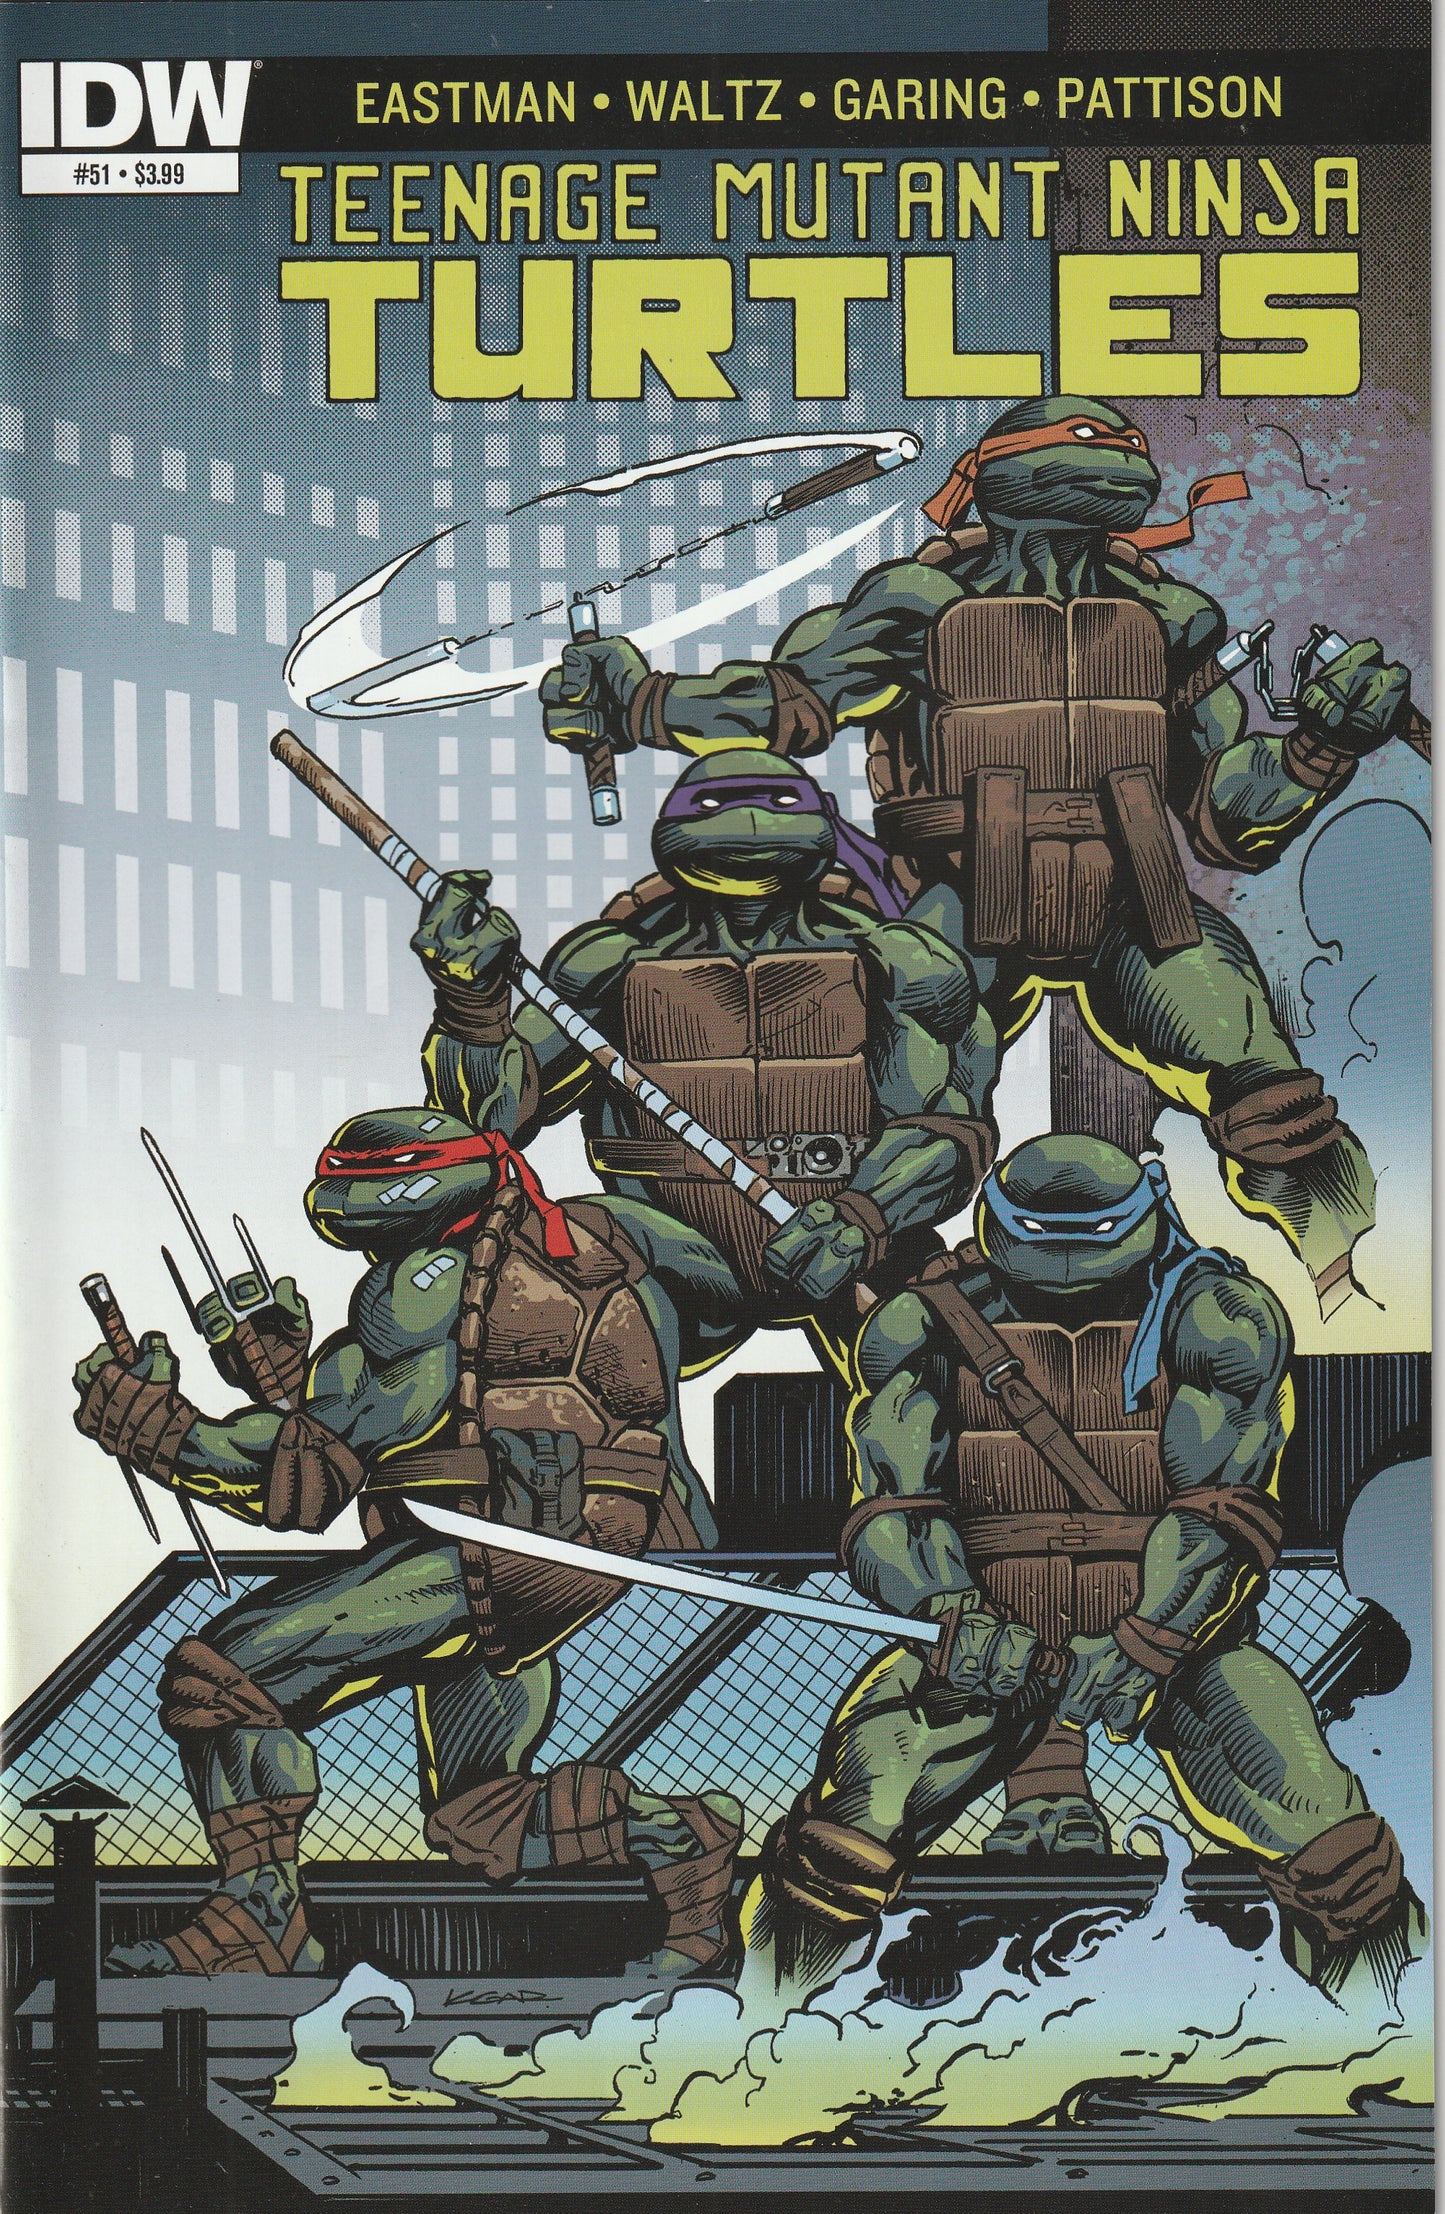 Teenage Mutant Ninja Turtles #51 (2015) - 1st Appearance of Jennika, Becomes a Female Turtle